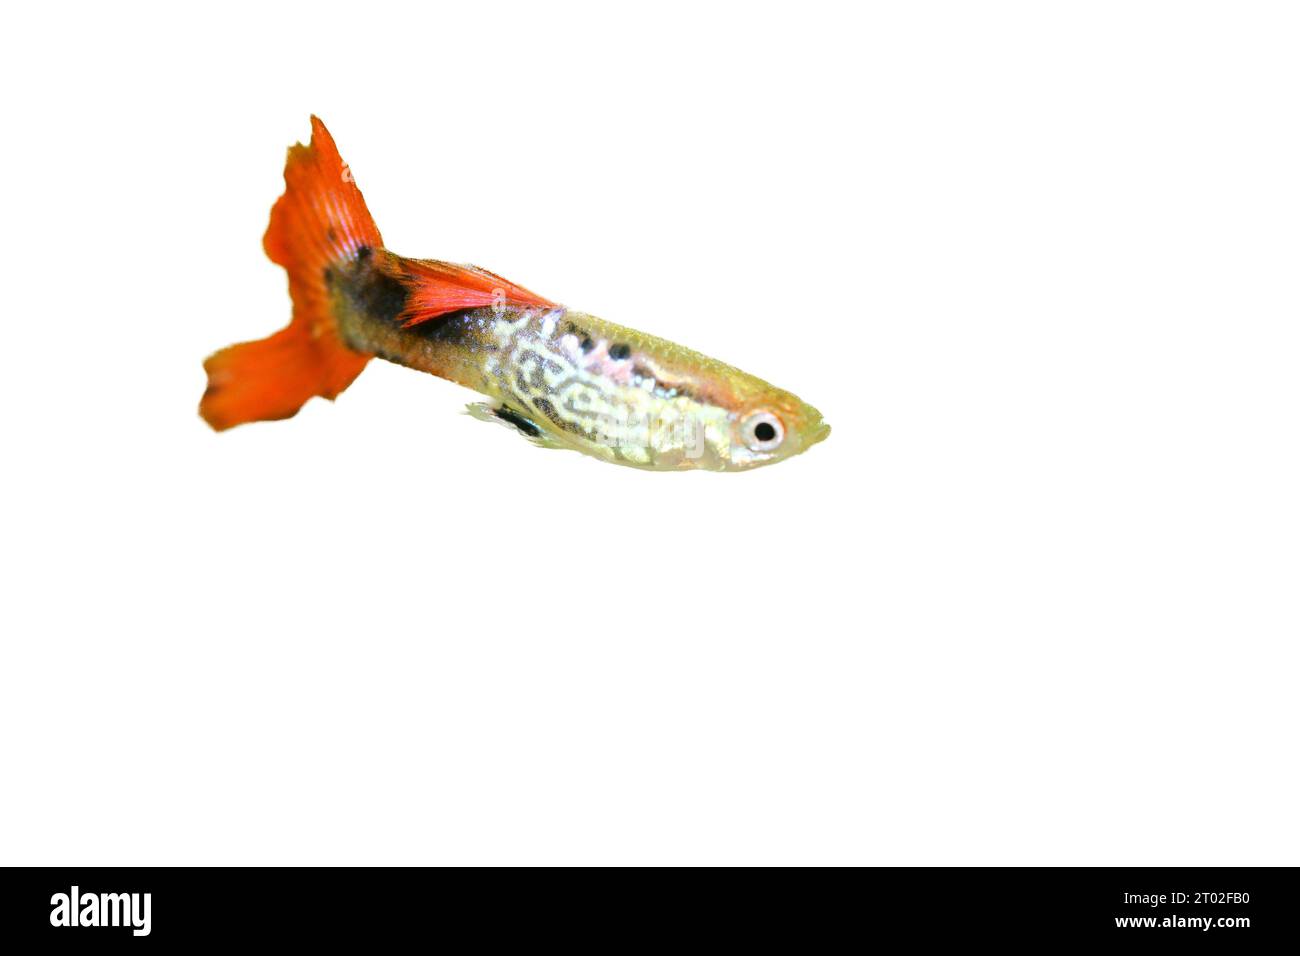 un GuppY masculin (Poecilia reticulata), un poisson d'aquarium d'eau douce populaire Banque D'Images